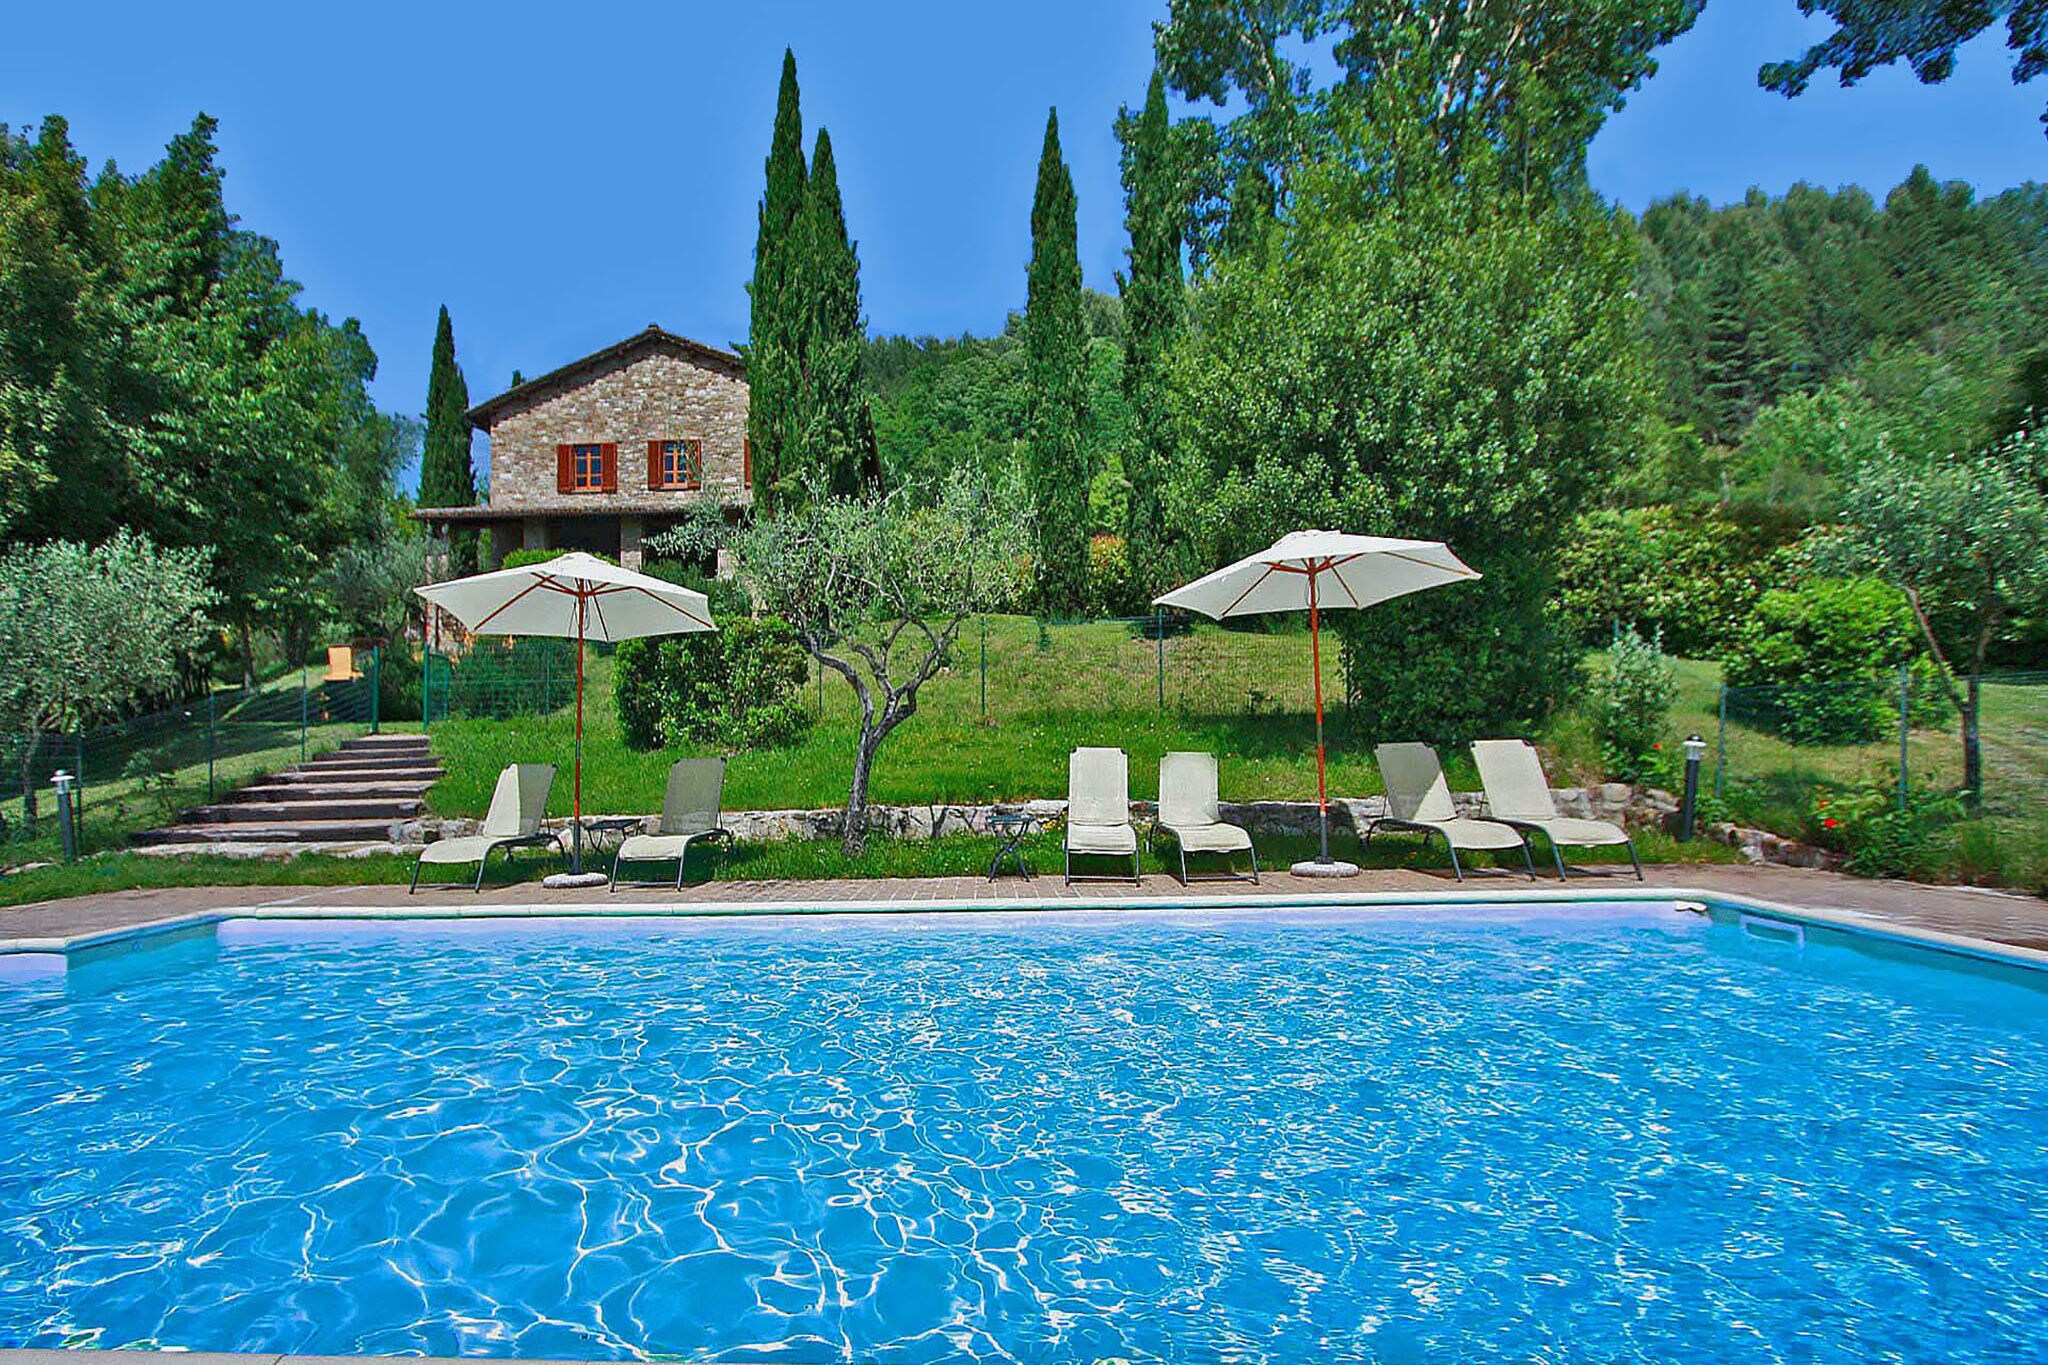 Ruimtelijk vakantiehuis in Assisi met grote tuin